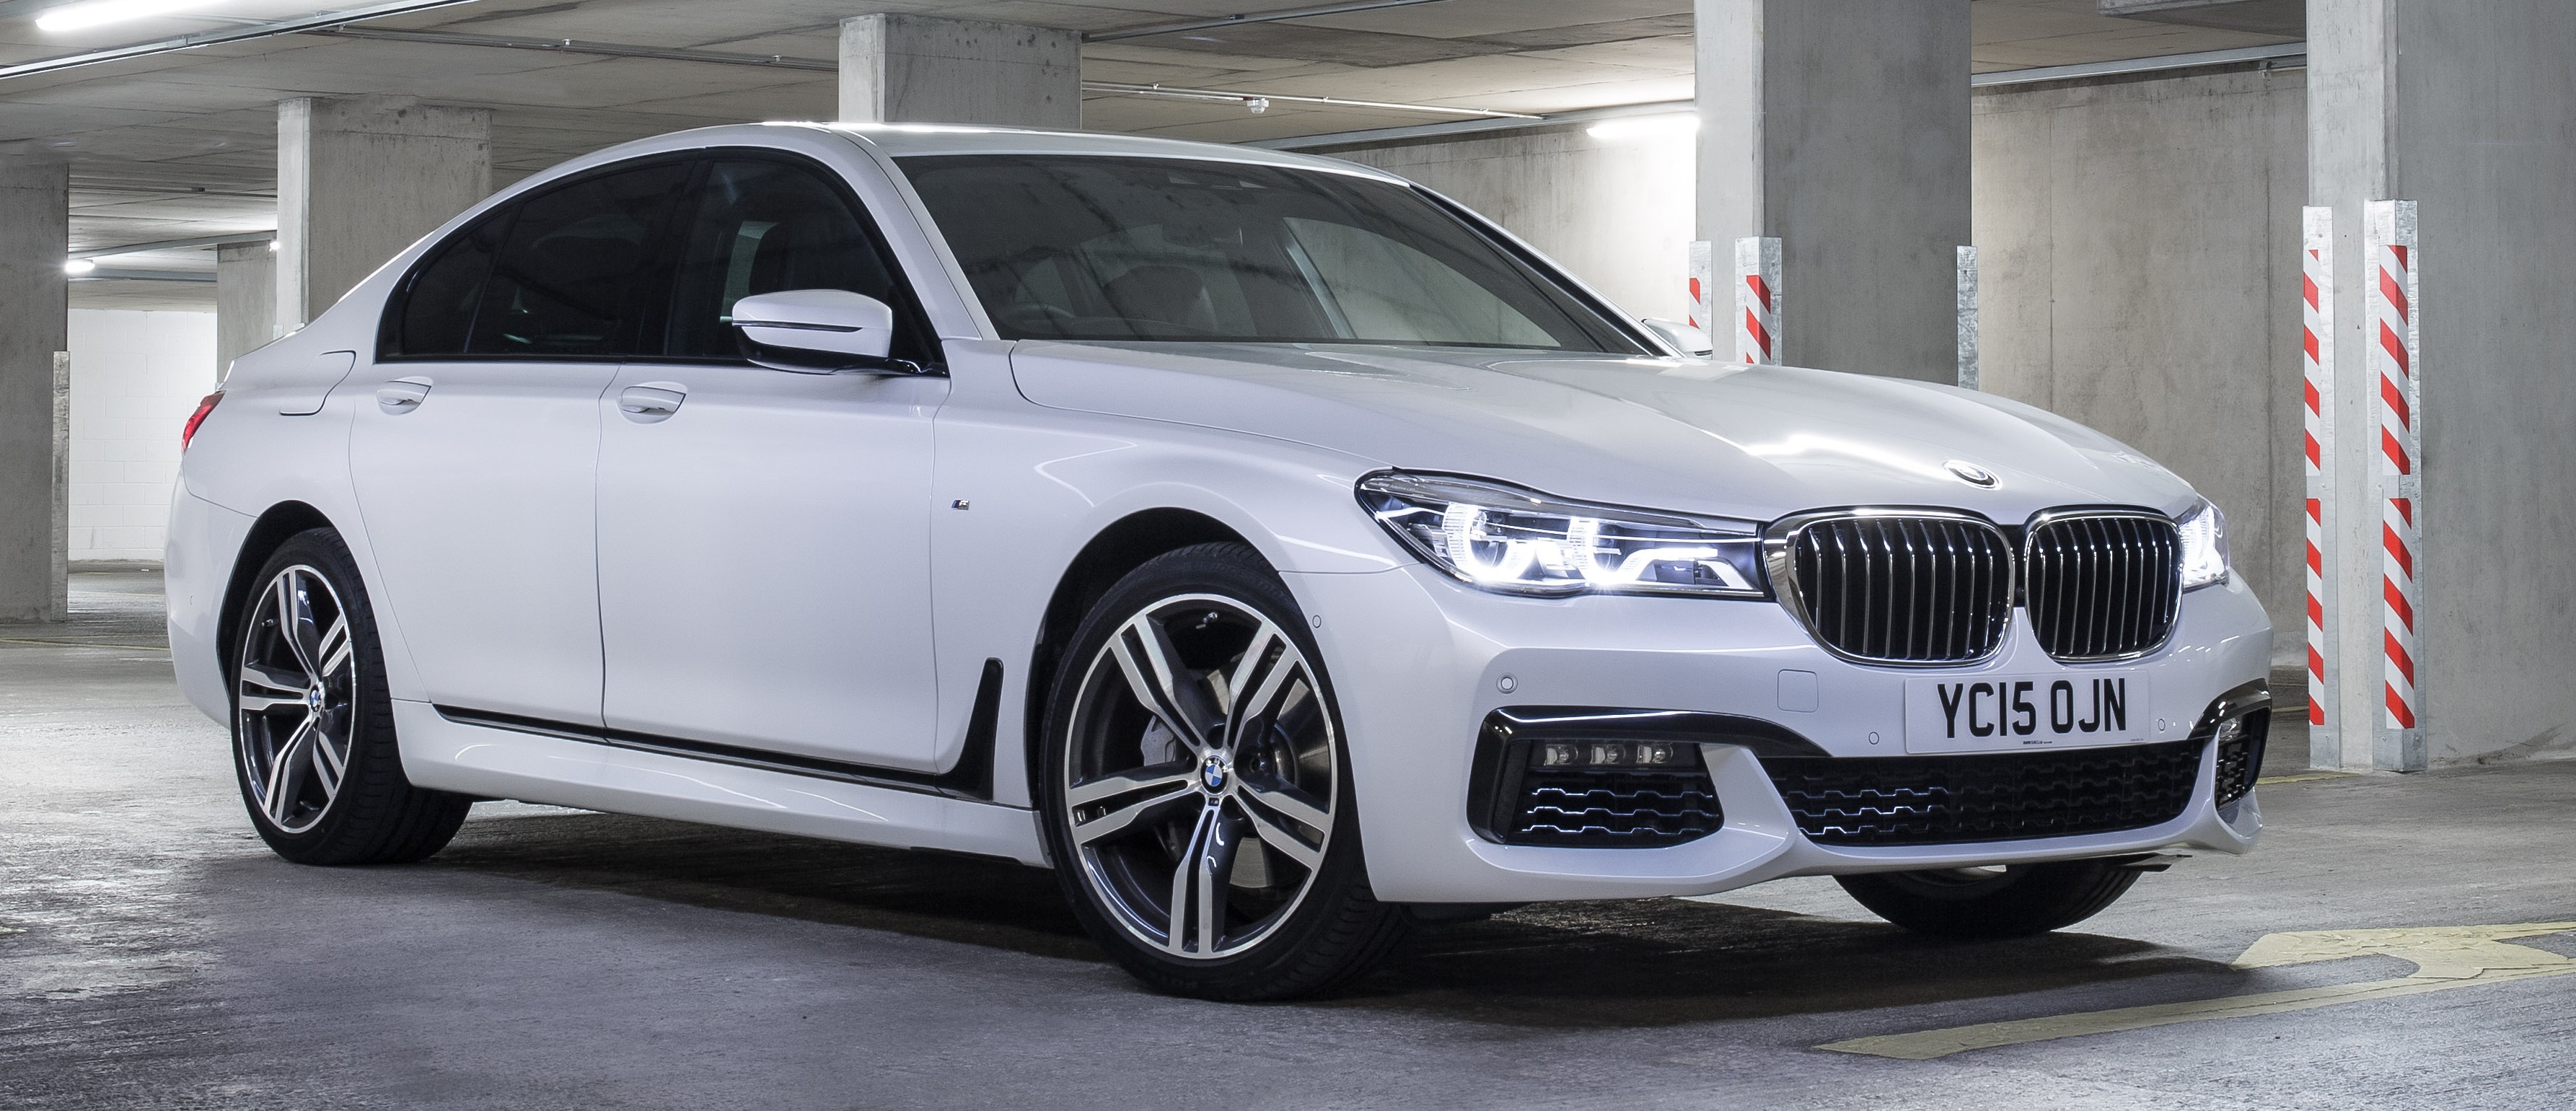 2016 BMW 730Li to get 2.0 litre turbo four-cylinder?